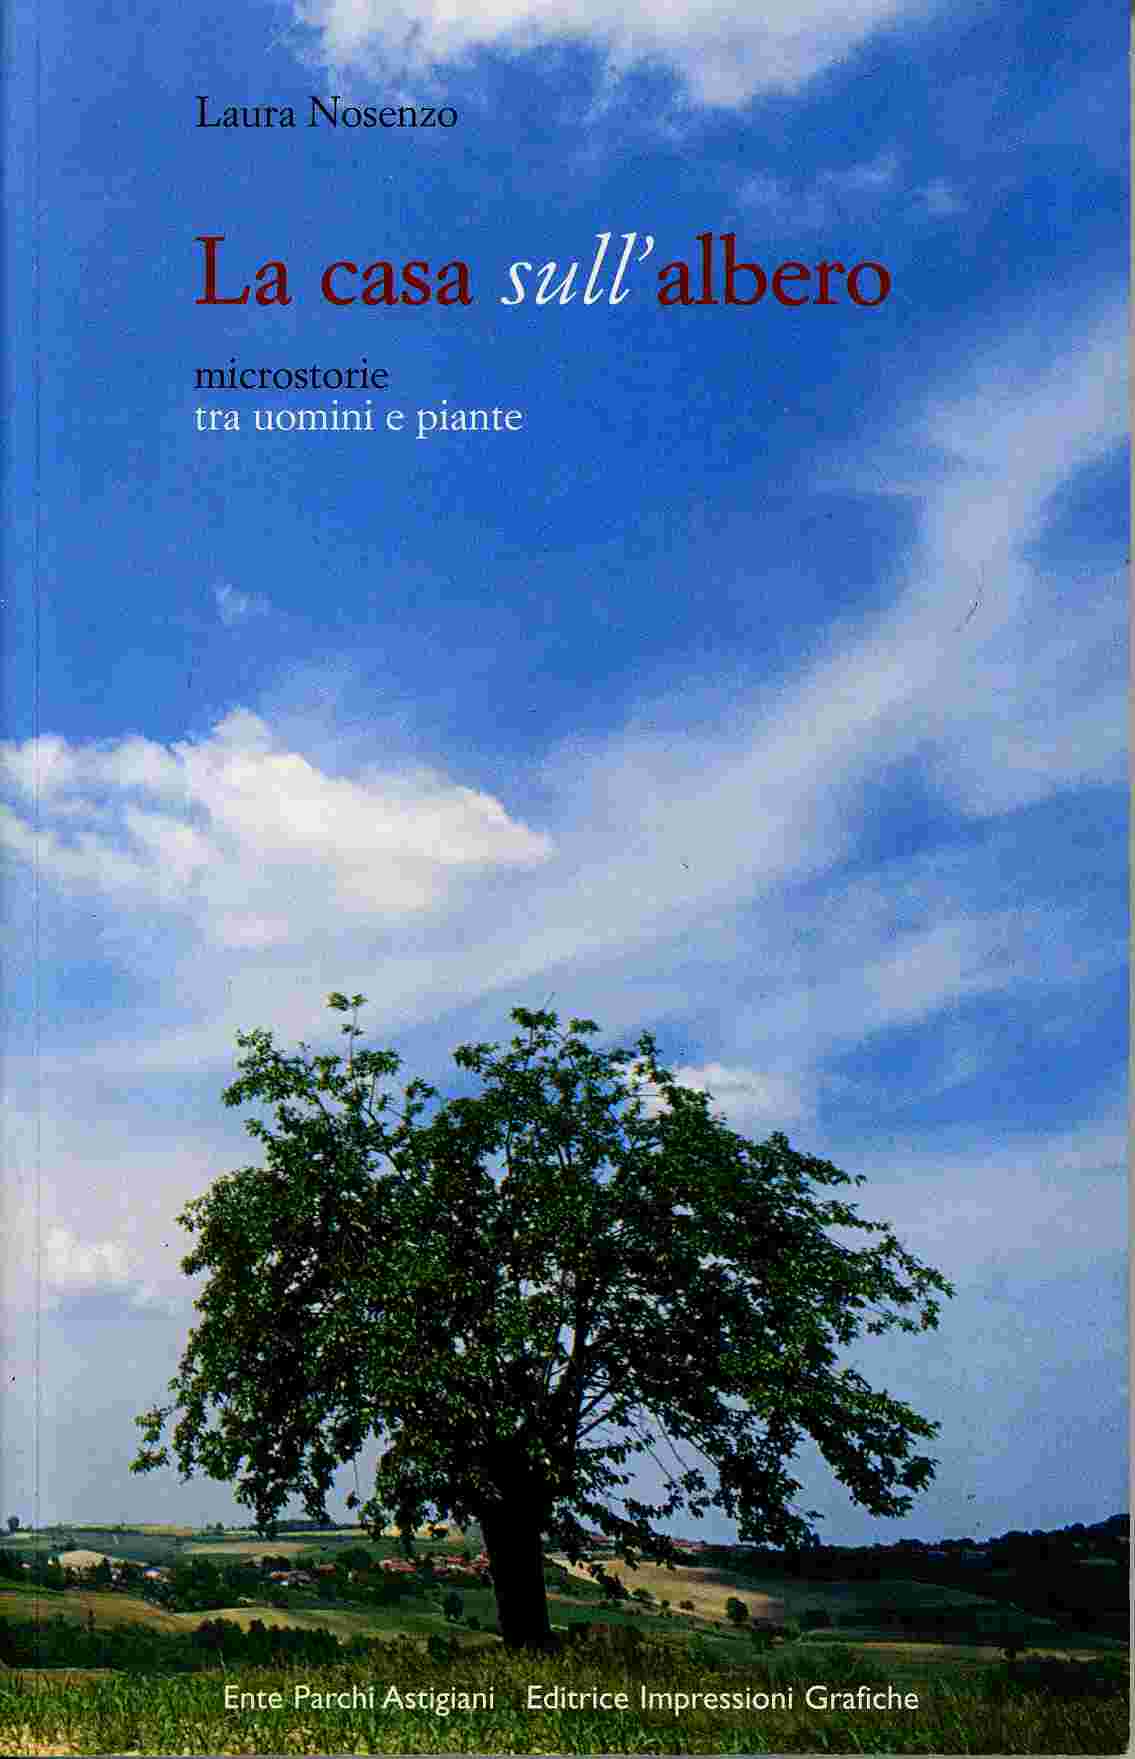 Copertina del Libro di Laura Nosenzo "La casa sull albero - Microstorie tra uomini e piante"